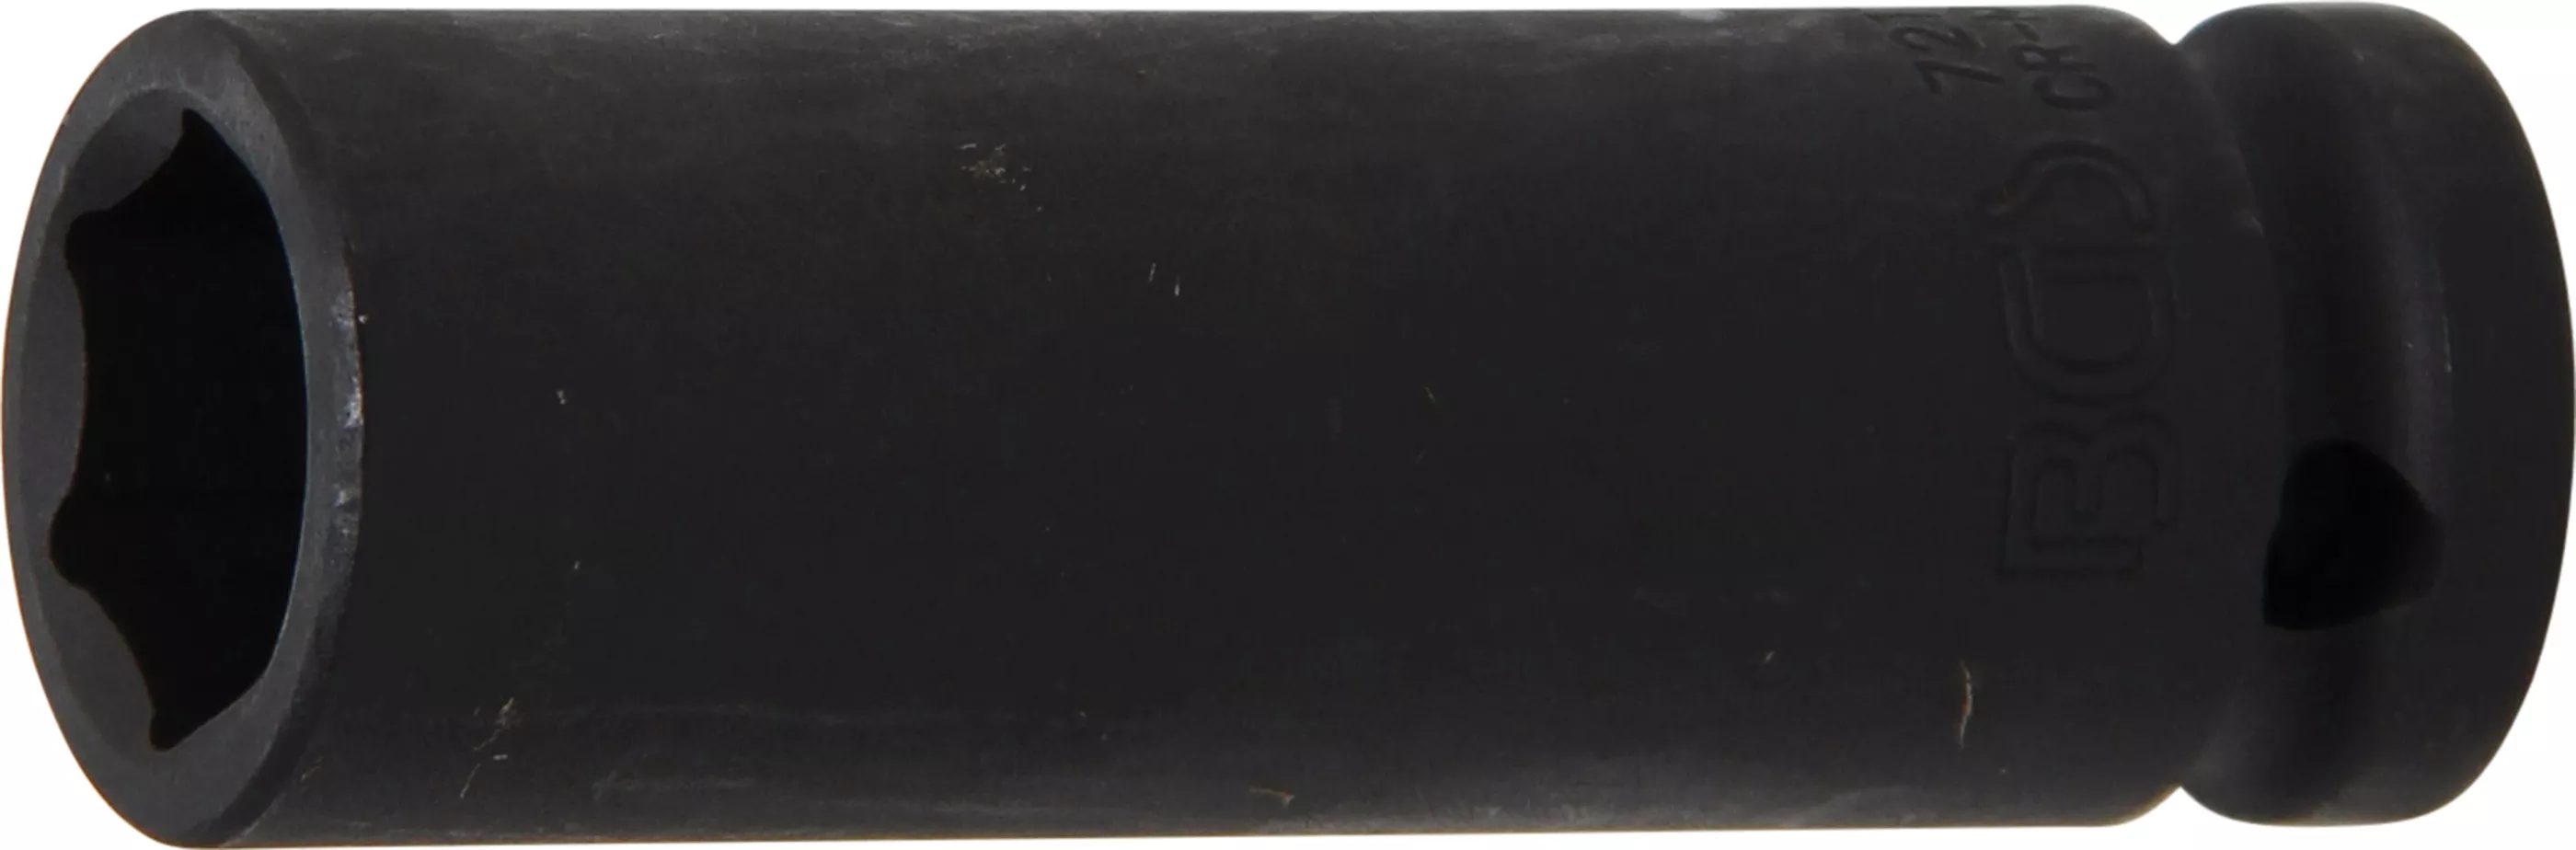 Rázový nástrčný klíč, šestihranný, 1/2", 17 mm - B7217